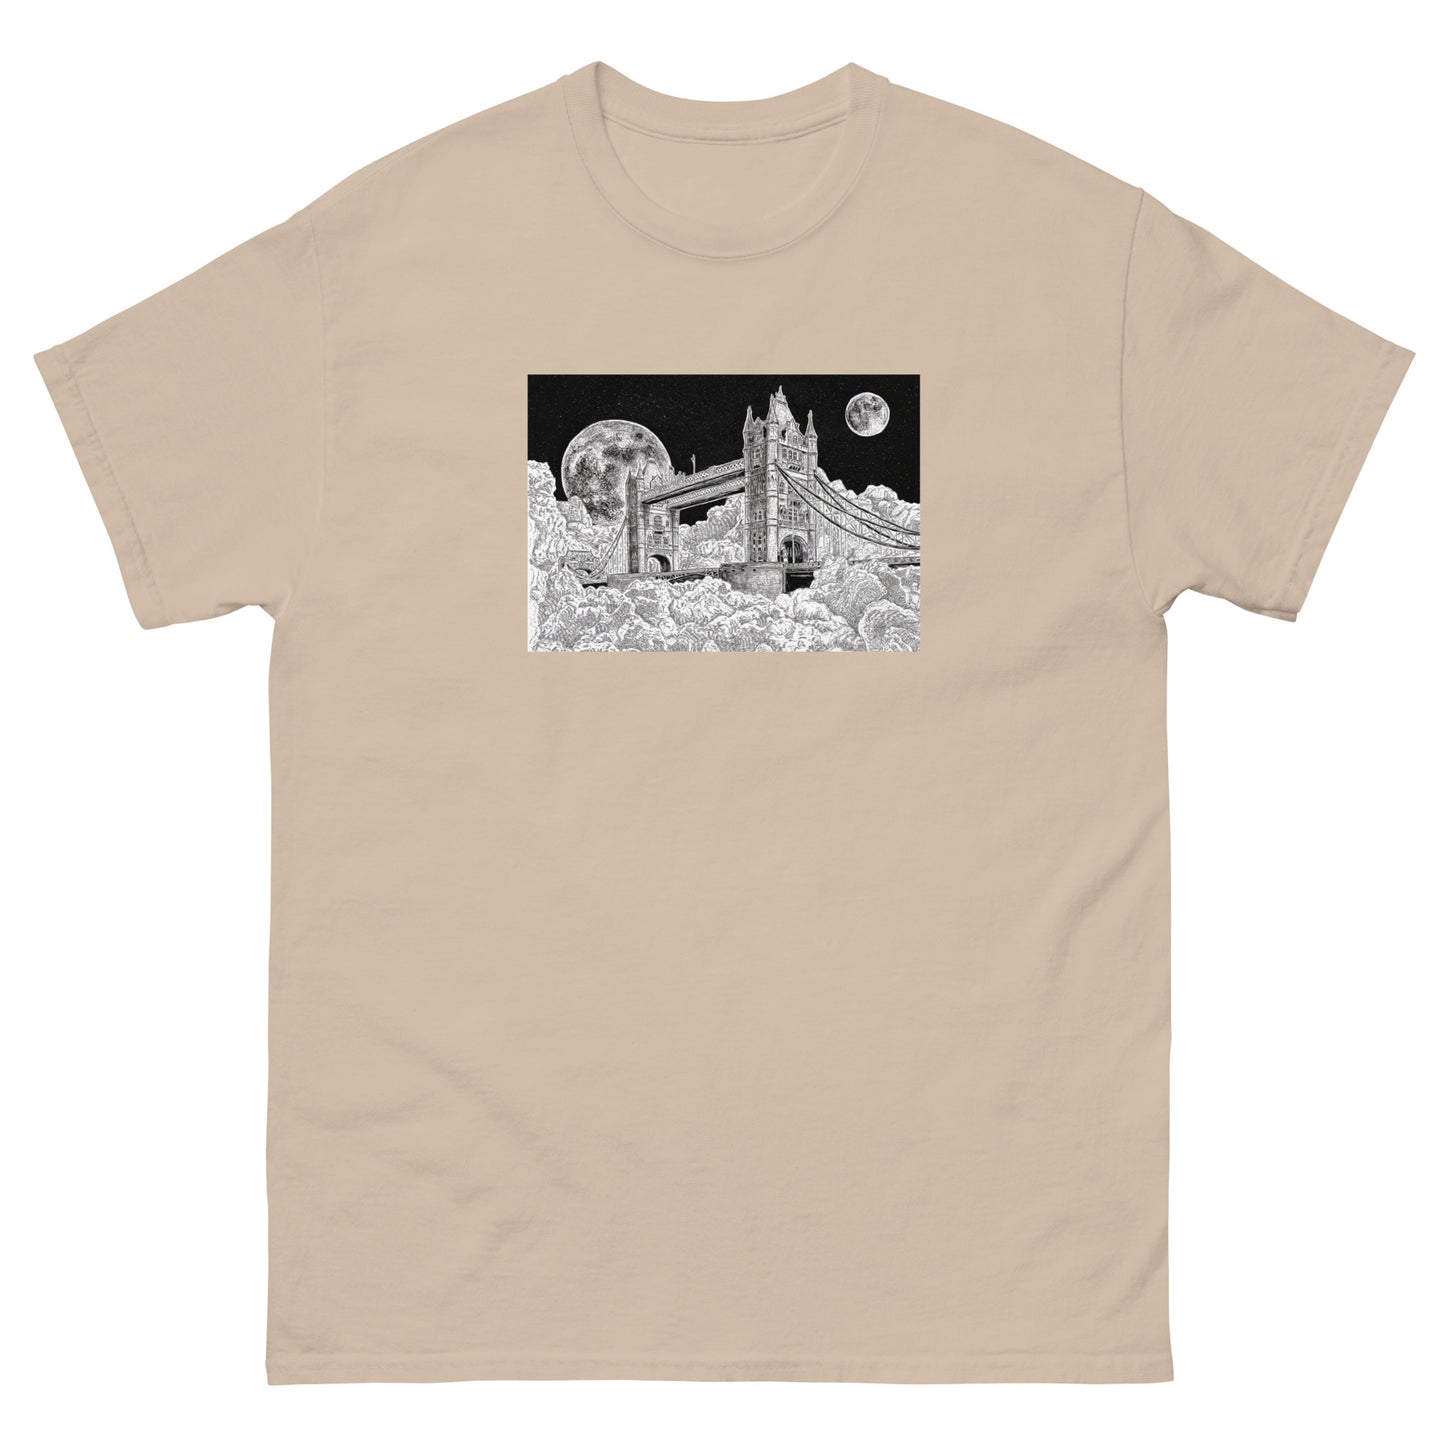 Tower Bridge at two moons T-Shirt